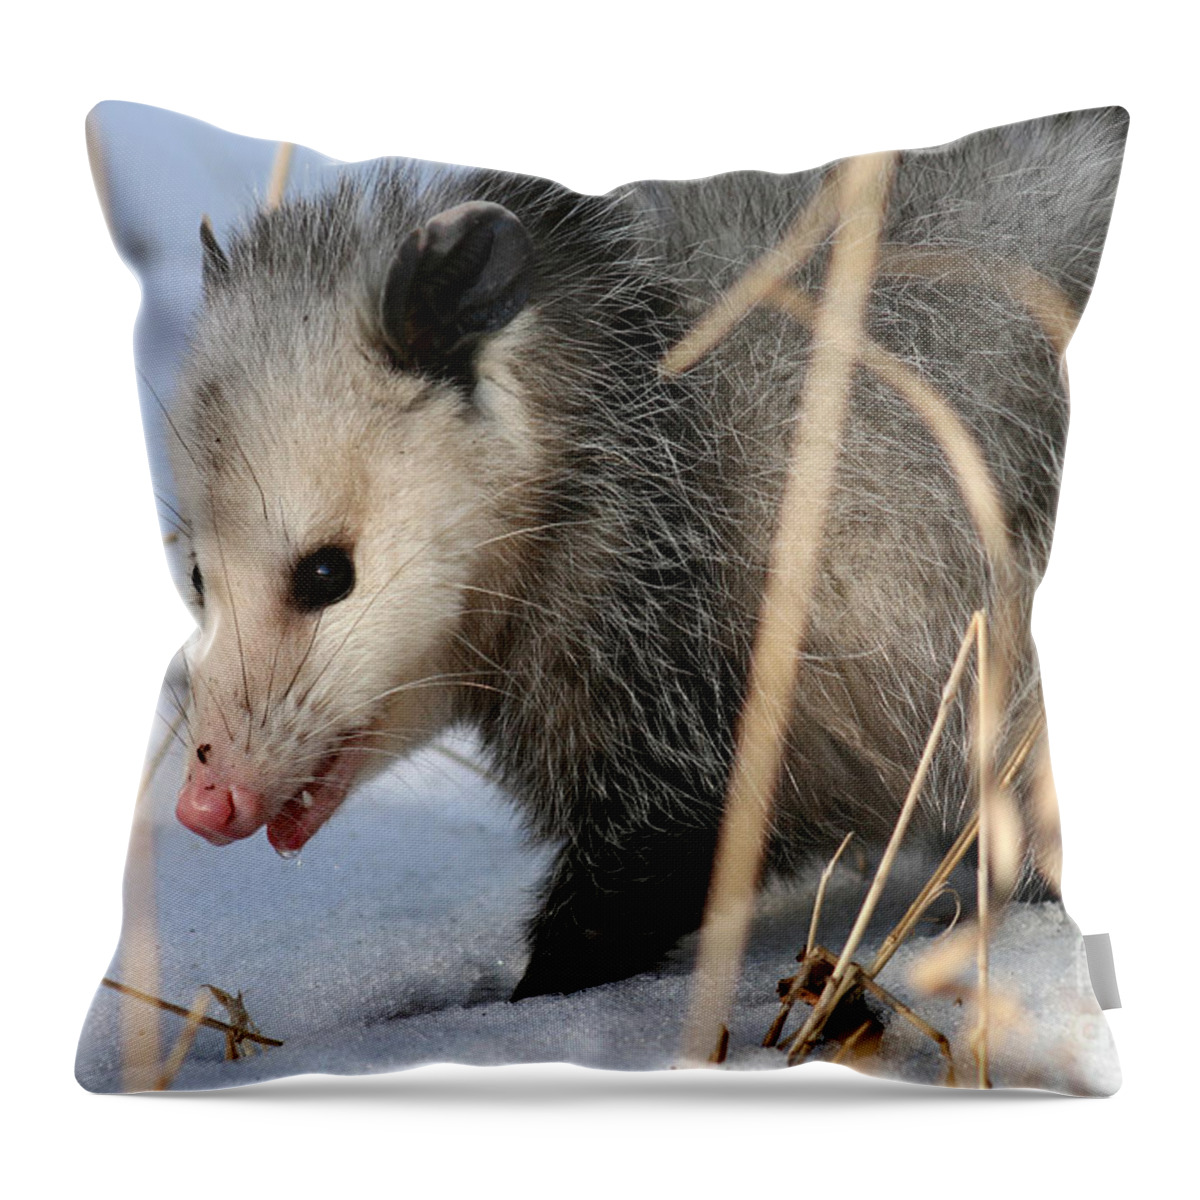 Opossum Throw Pillow featuring the photograph Winter Opossum by E B Schmidt